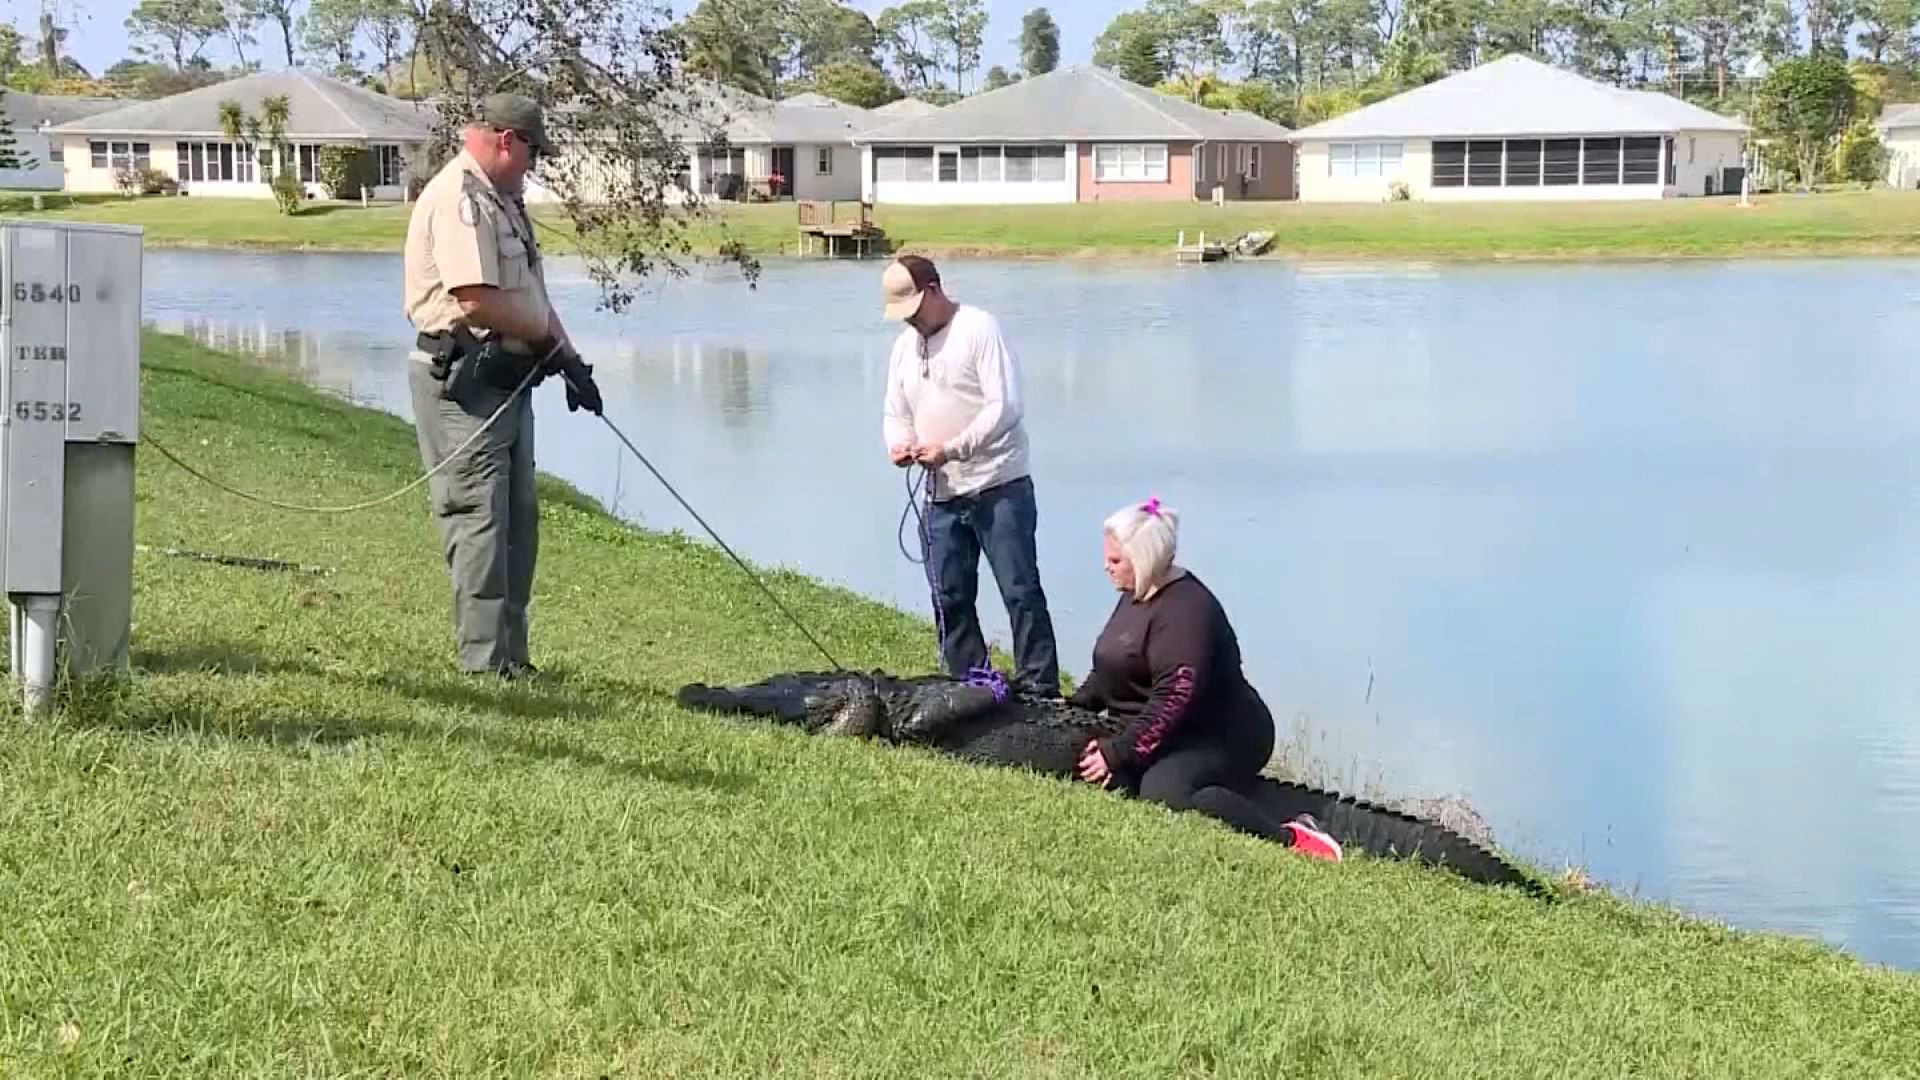 Đang đi dạo, cụ bà bất ngờ bị cá sấu kéo xuống hồ nước